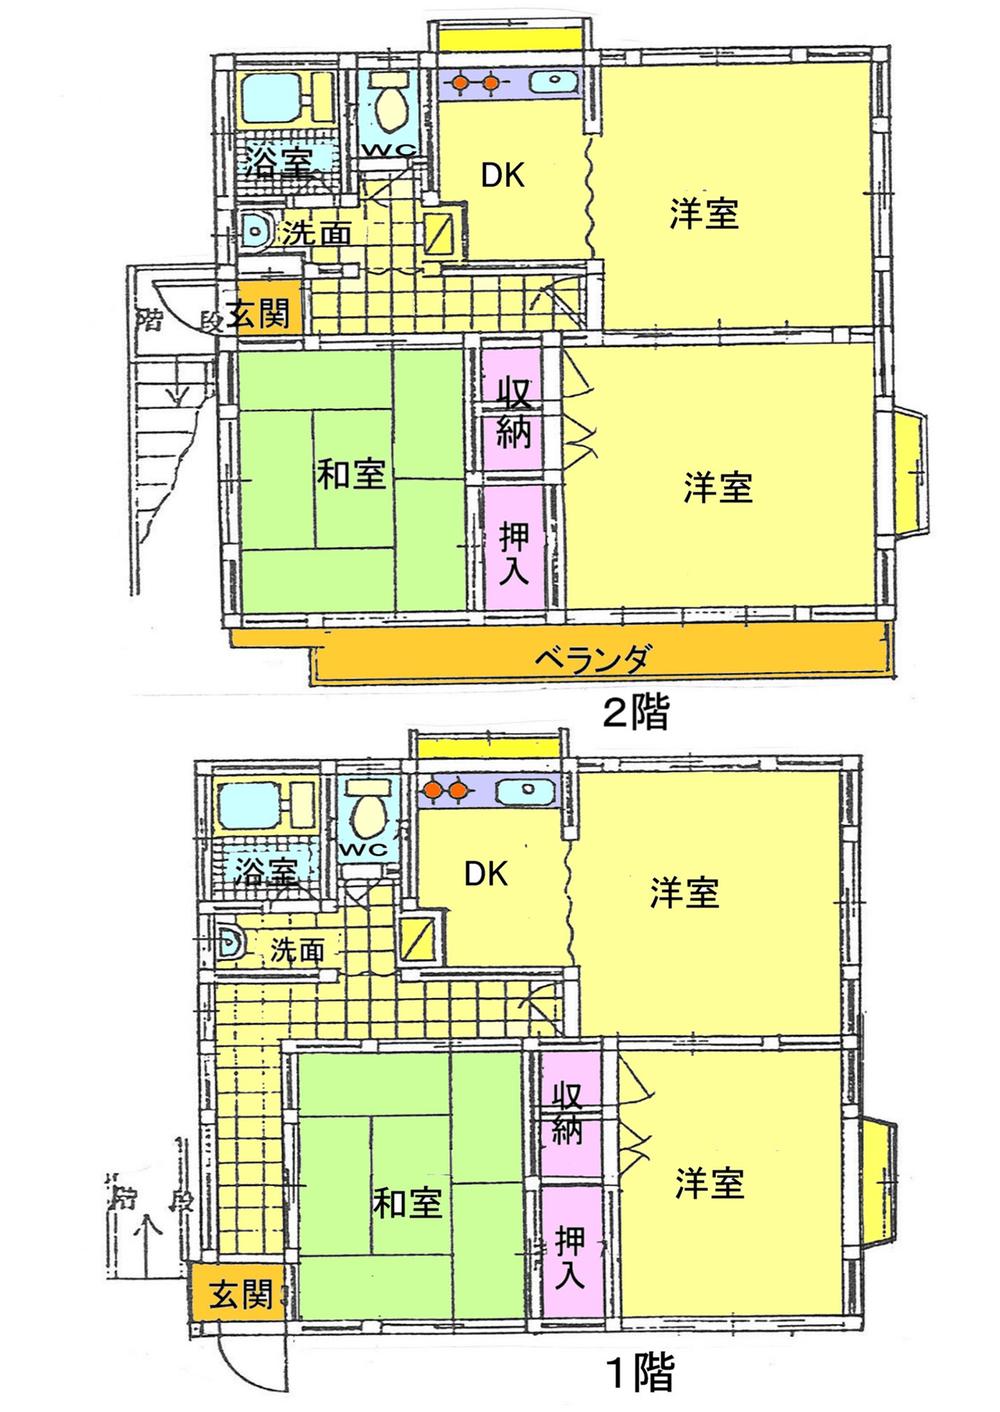 Floor plan. 42 million yen, 4DK, Land area 102.72 sq m , Building area 105.98 sq m